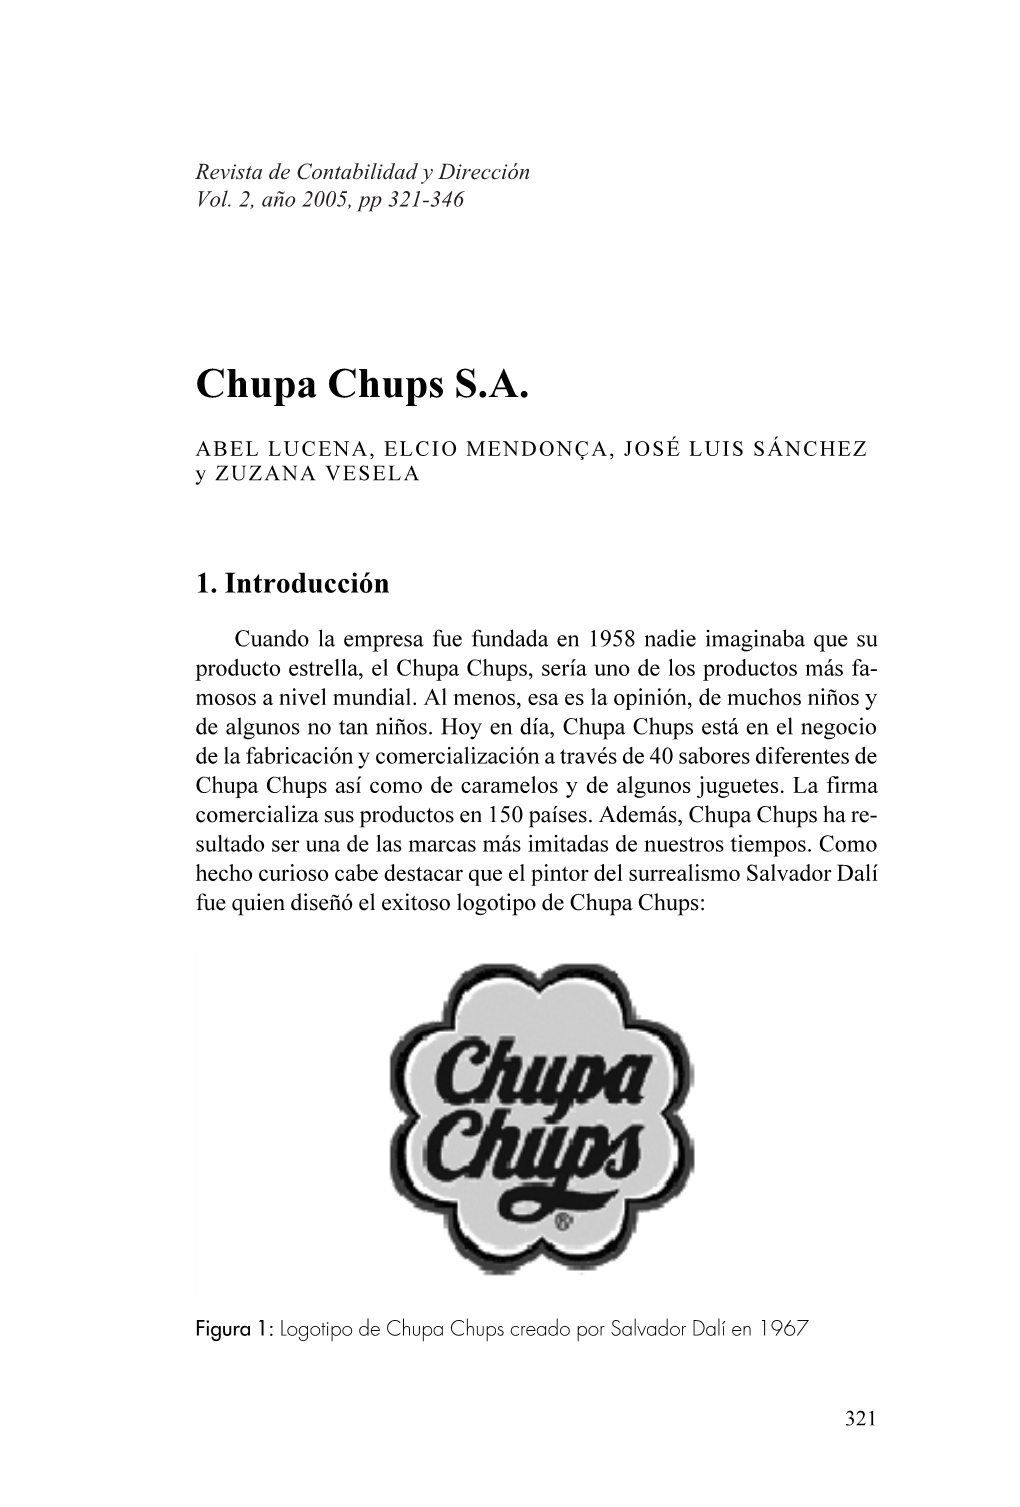 Chupa Chups S.A